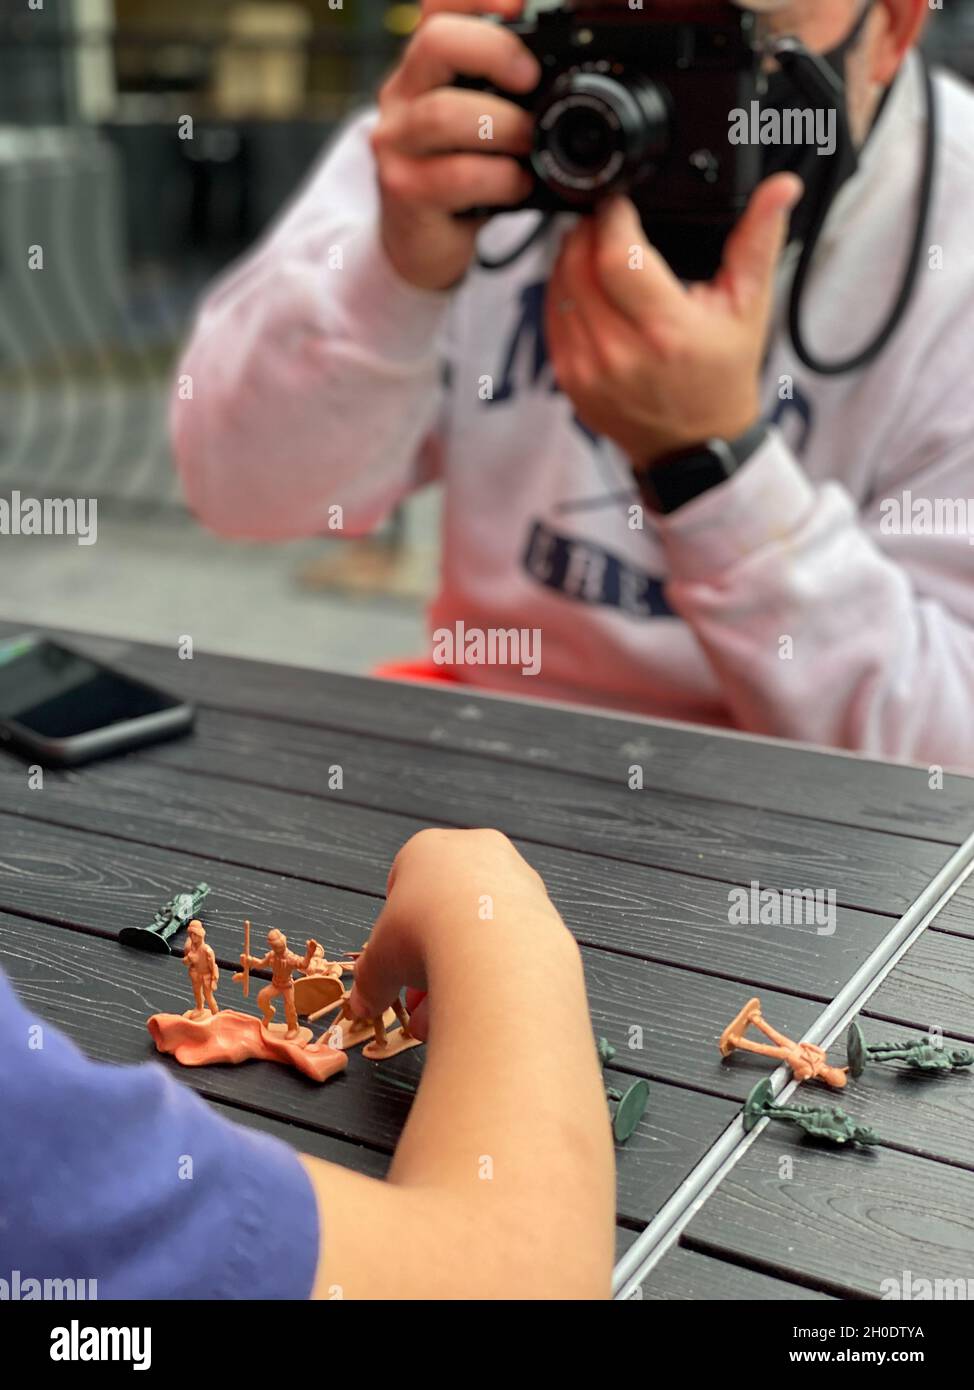 Père photographiant son fils jouant avec des soldats jouets Banque D'Images